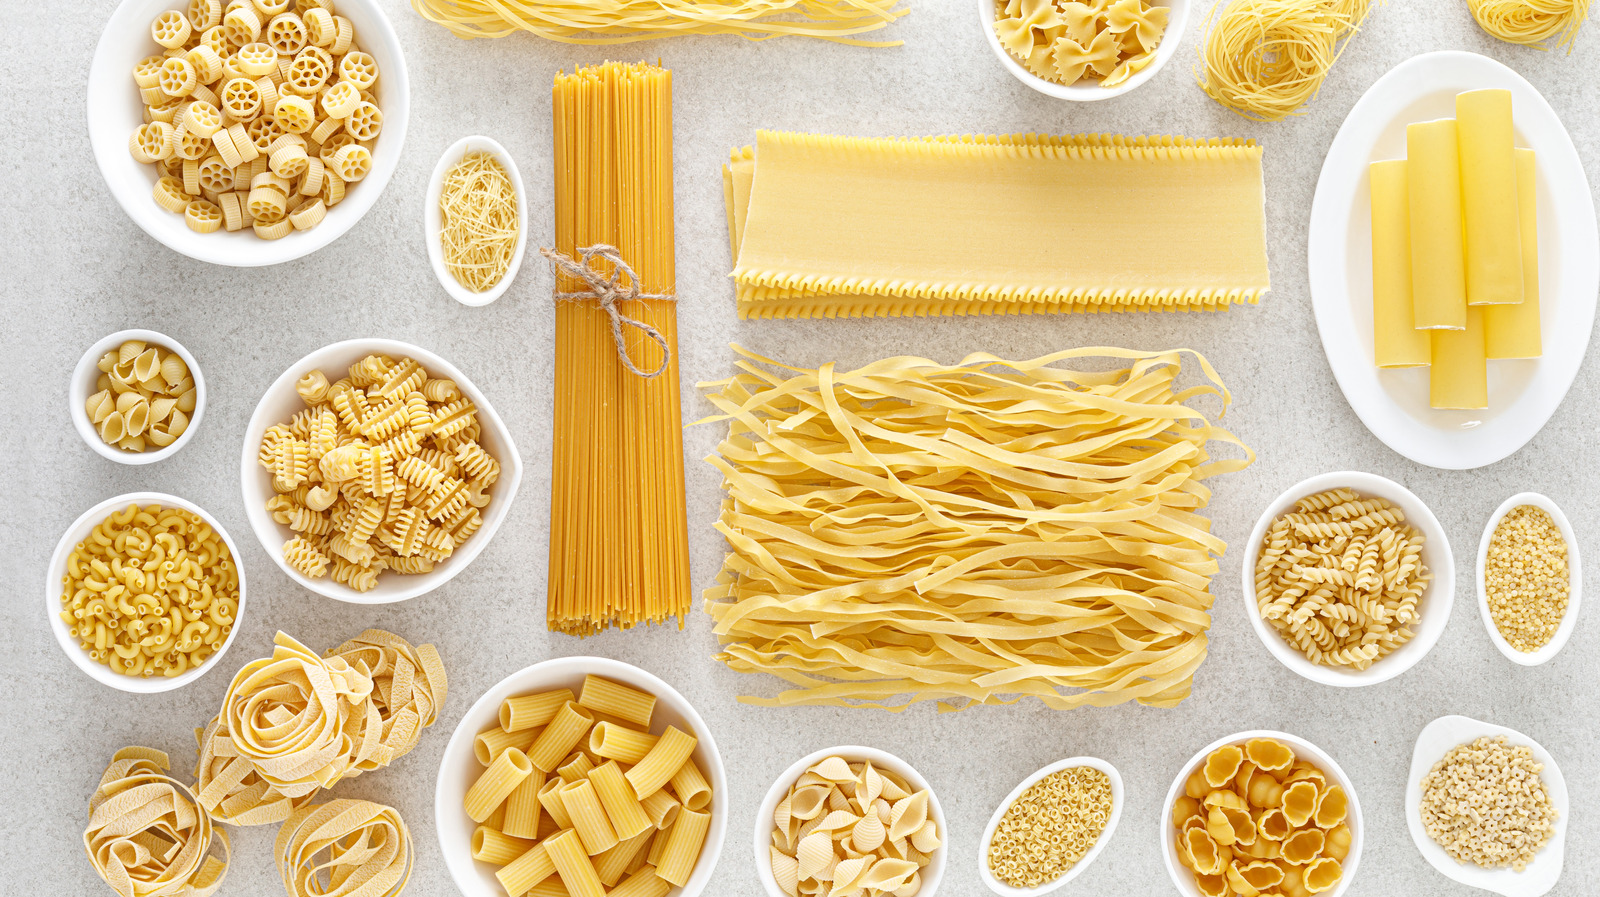 Noodles & pasta substitutes